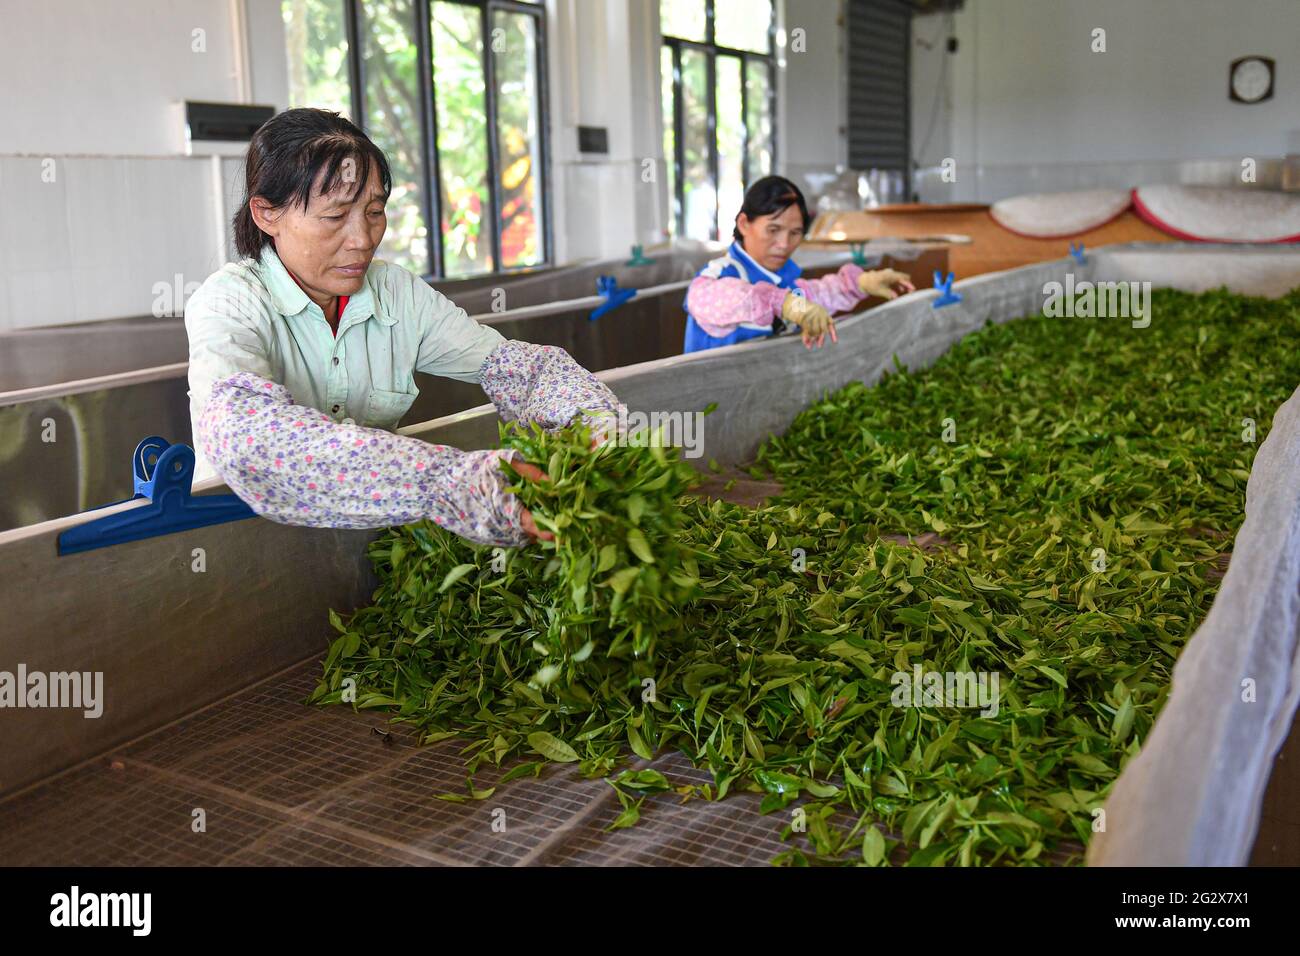 (210613) -- BAISHA, 13. Juni 2021 (Xinhua) -- Bauern verarbeiten frisch gepflückte Teeblätter im Wulilu-Teegarten im autonomen Landkreis Baisha Li in der südchinesischen Provinz Hainan, 10. Juni 2021. Fu Xiaofang, die aus der ethnischen Gruppe von Li stammt, gründete 2008 ihr eigenes Teegeschäft und führte den Bio-Teegarten von Wulilu im autonomen Bezirk Baisha Li, ihrer Heimatstadt. Durch Versuch und Irrtum expandierte Fu's Teegarten auf etwa 20 Hektar und verkaufte in ganz China Bio-Tee. Der Teegarten, der im Rahmen eines Programms zur Armutsbekämpfung in der Industrie betrieben wird, hat verarmte Bauern in die Teeproduktion einbezogen und geholfen Stockfoto